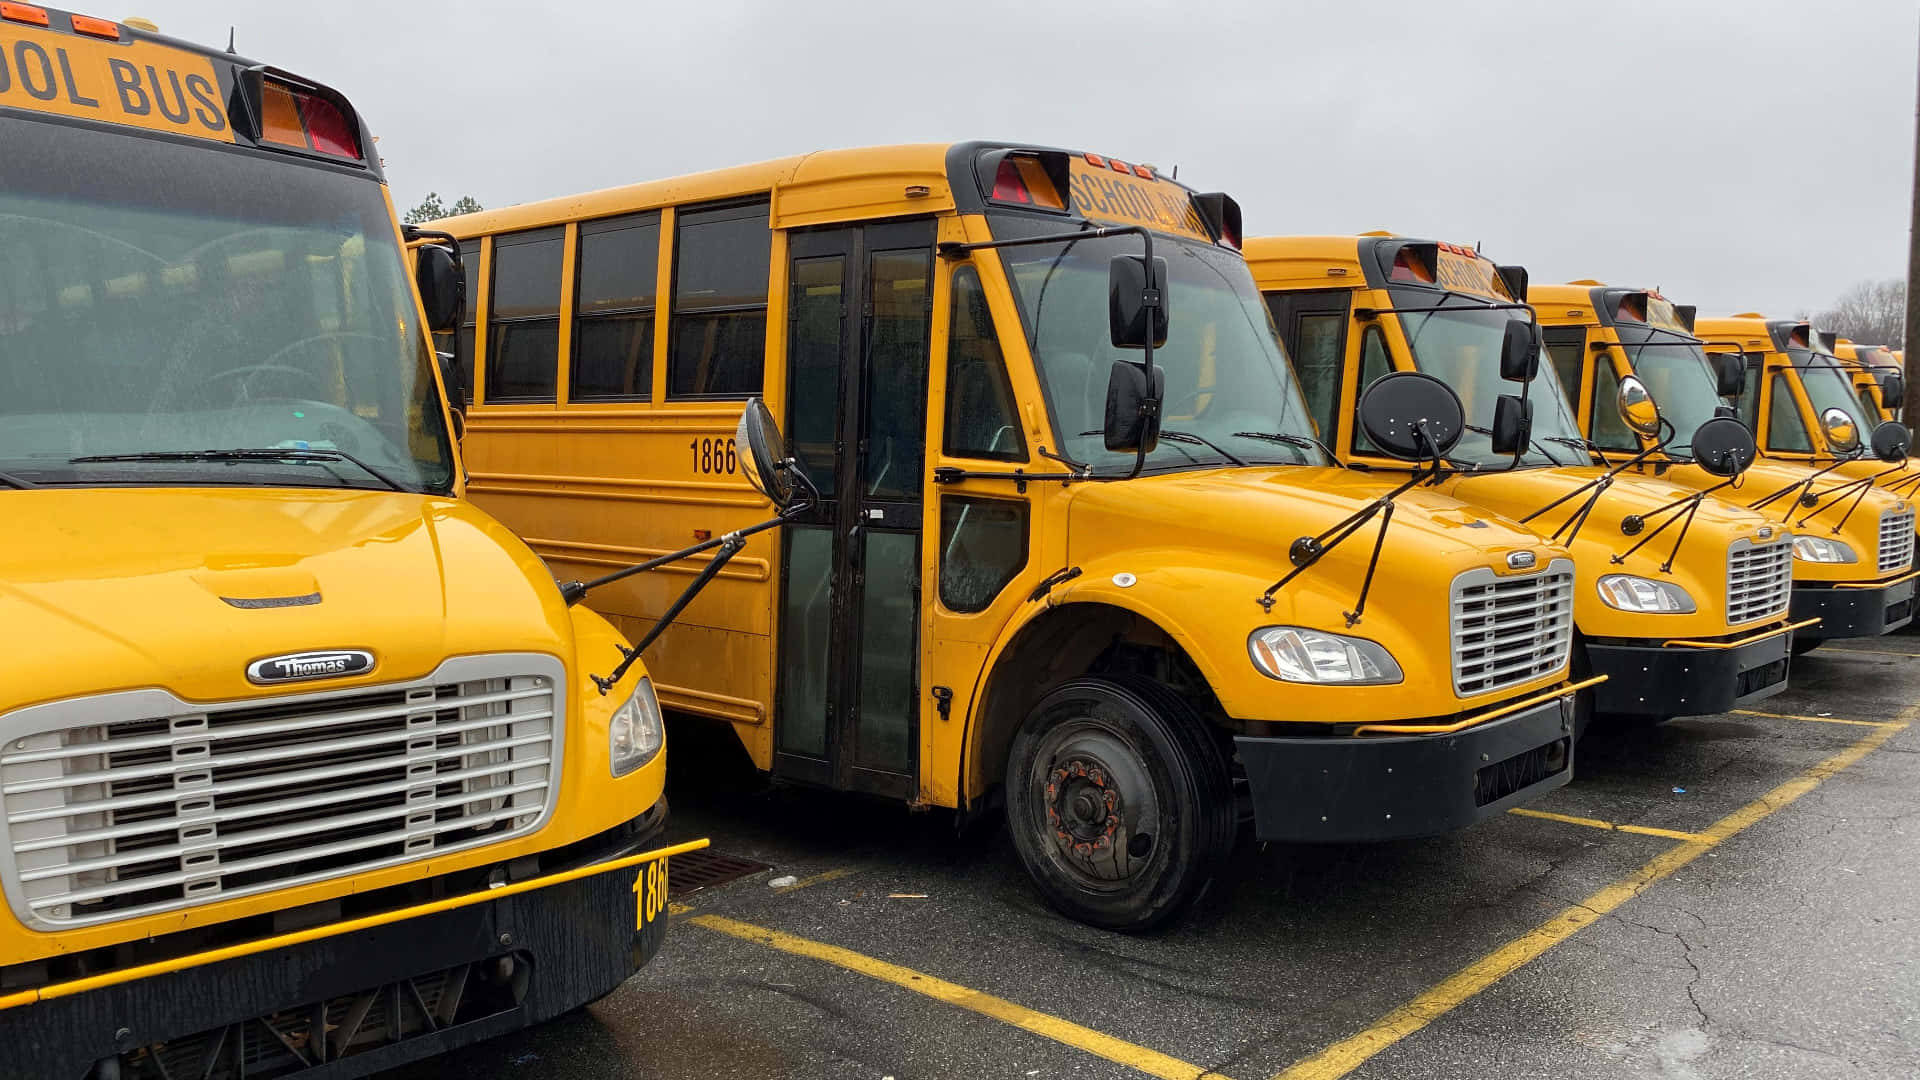 Vacant School Bus Fleet Parking Lot Background